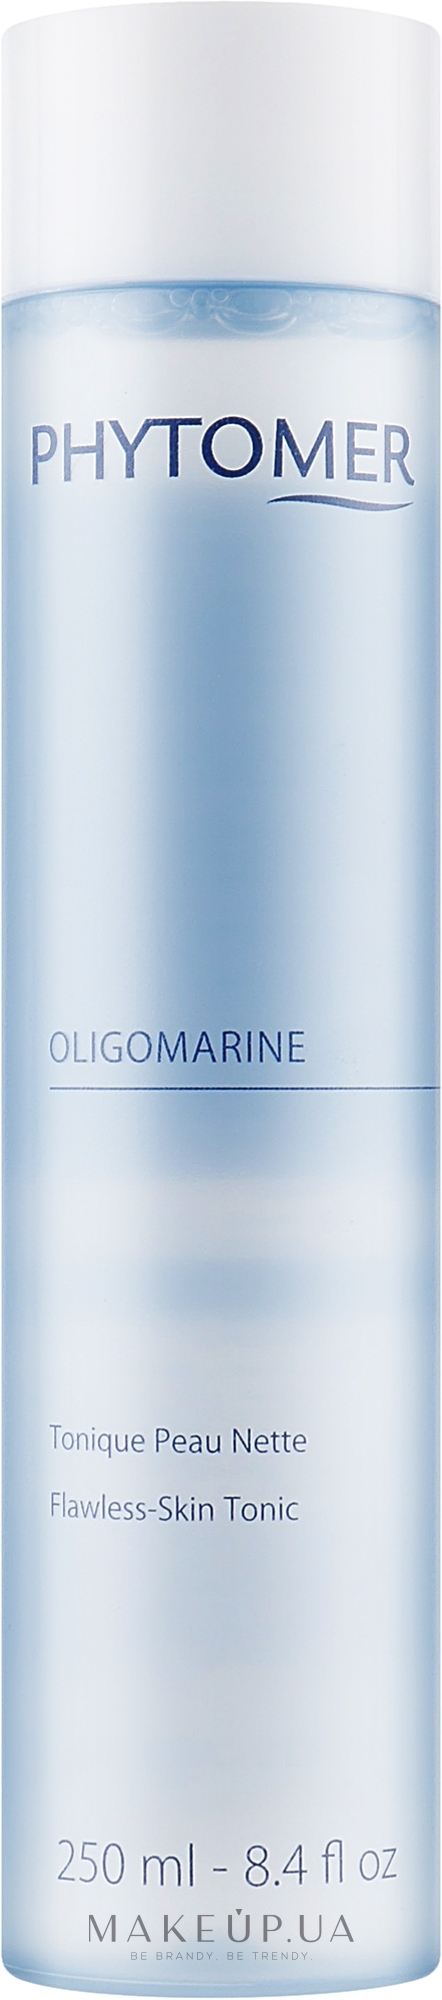 Зволожуючий тонік для обличчя - Phytomer Oligomarine Tonic — фото 250ml